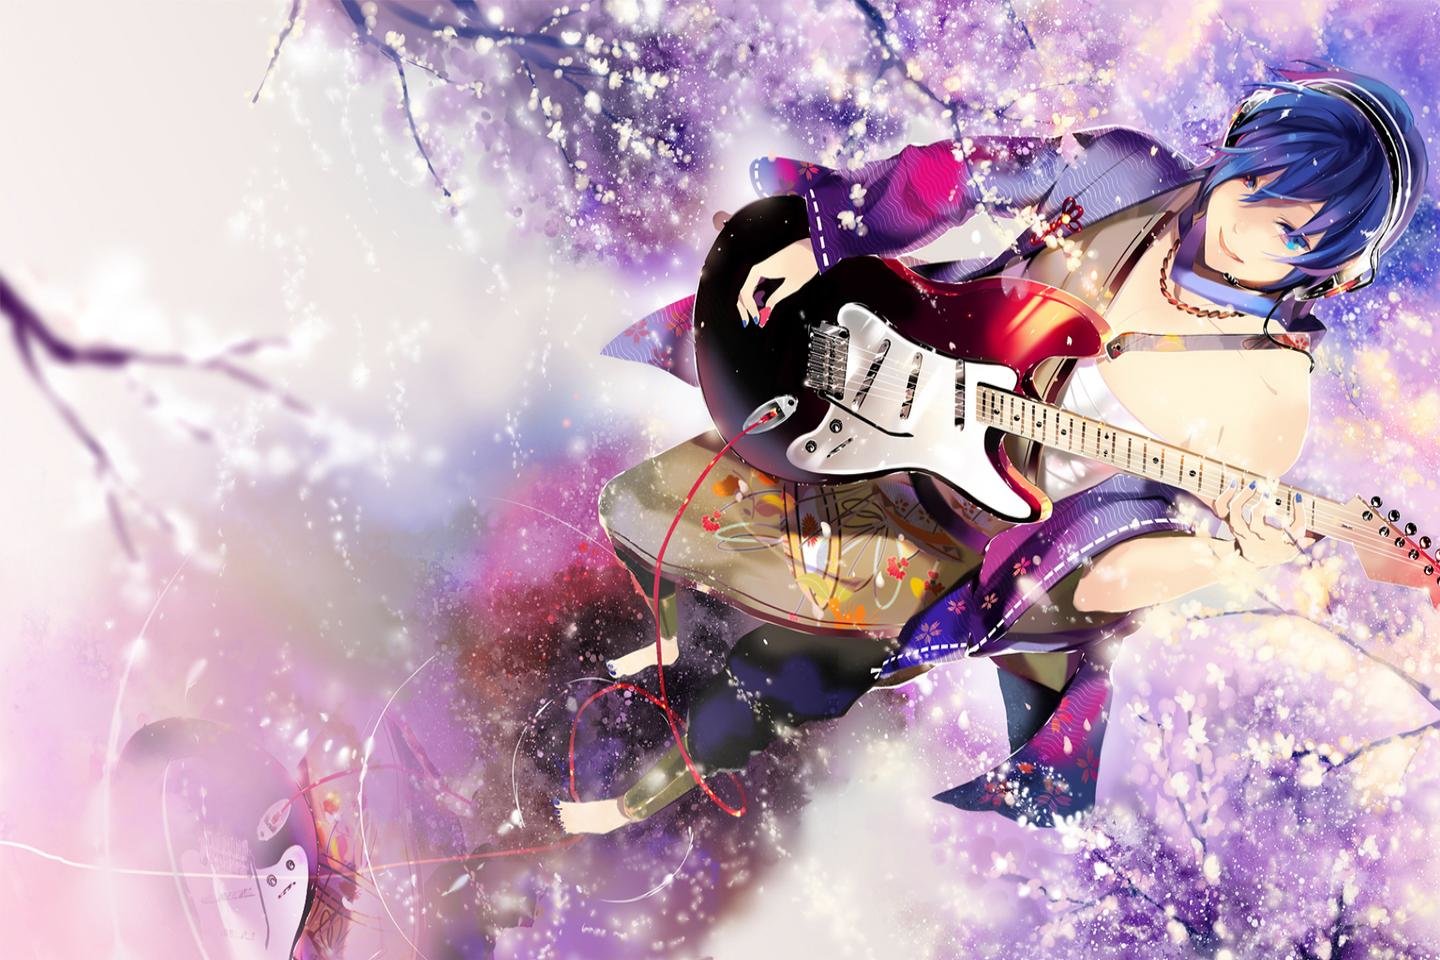 Best Kaito (Vocaloid) wallpaper ID:436 for High Resolution hd 1440x960 desktop